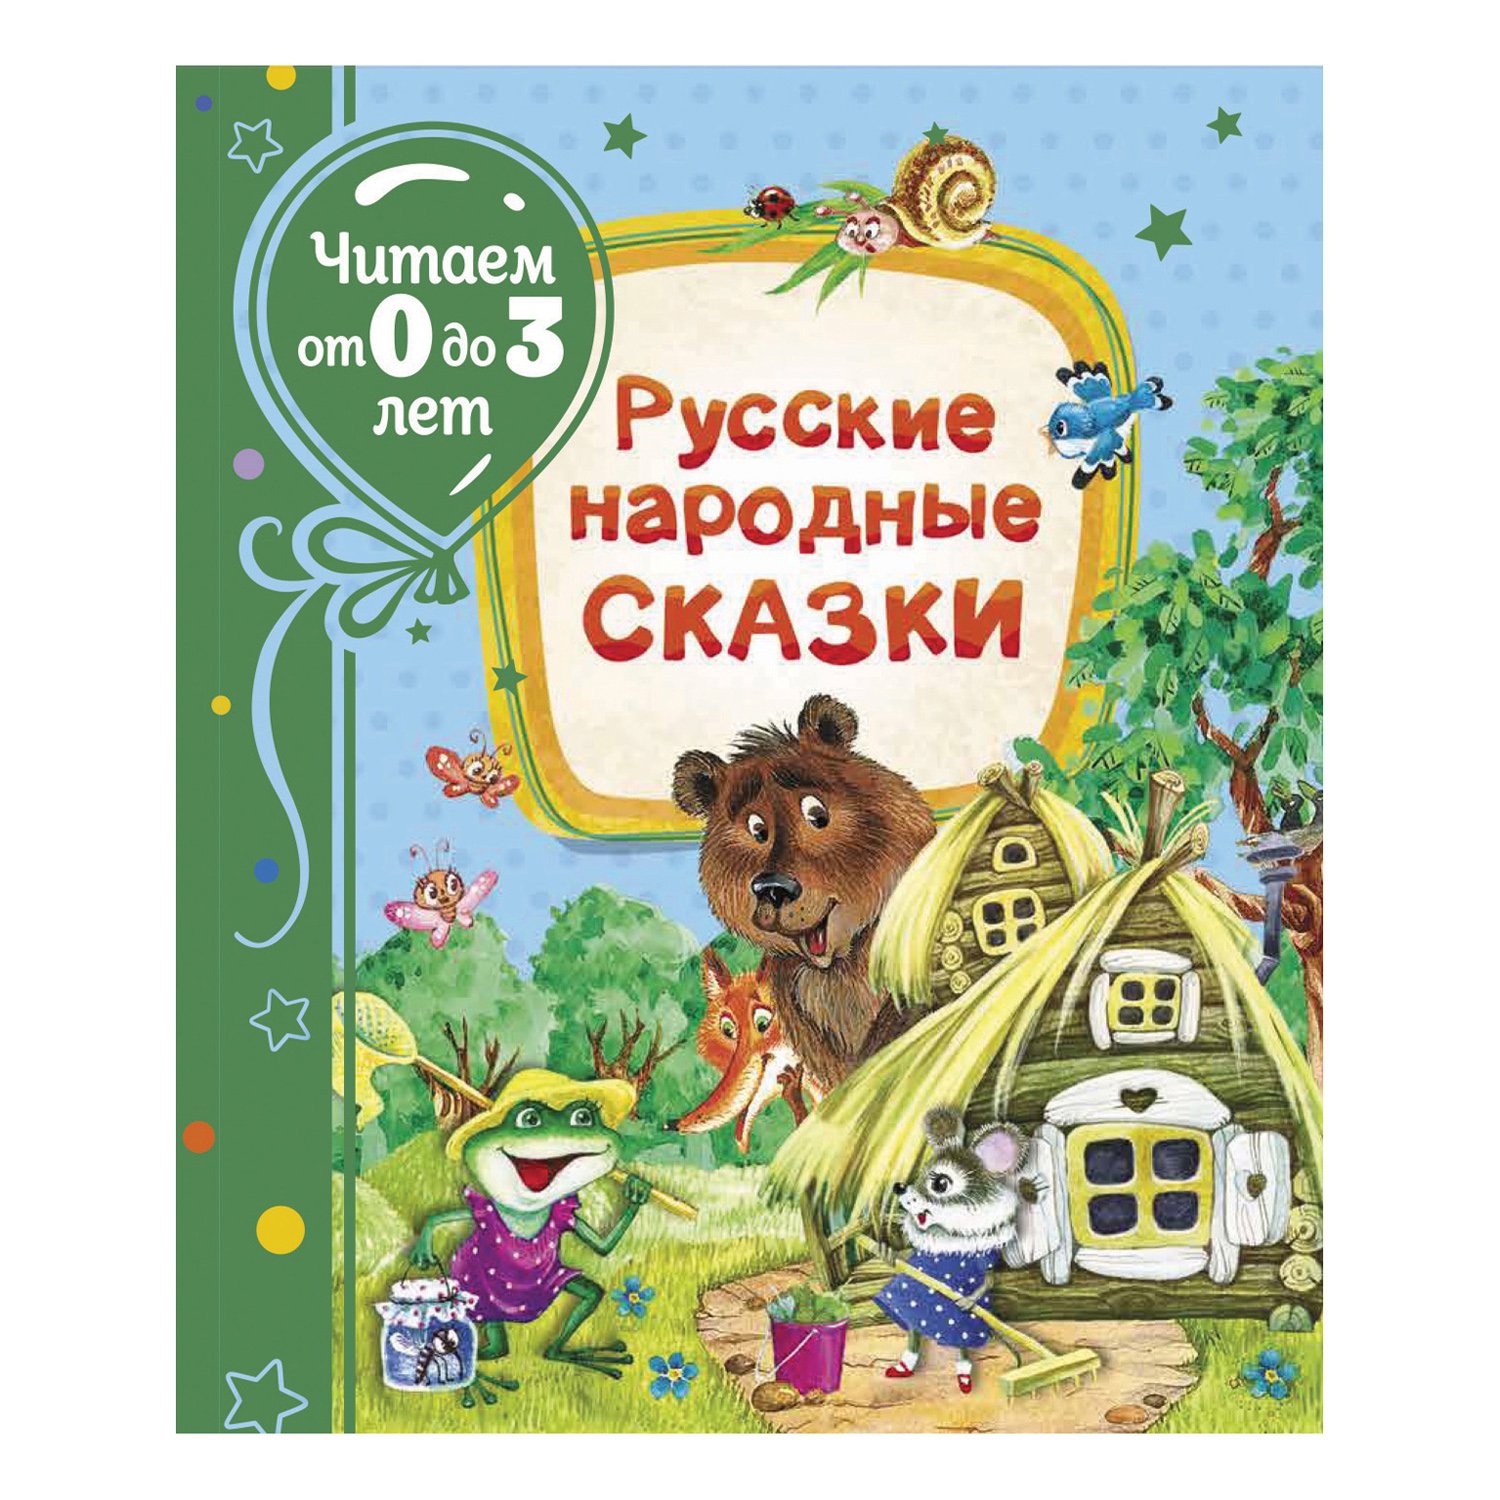 

Книга Русские народные сказки